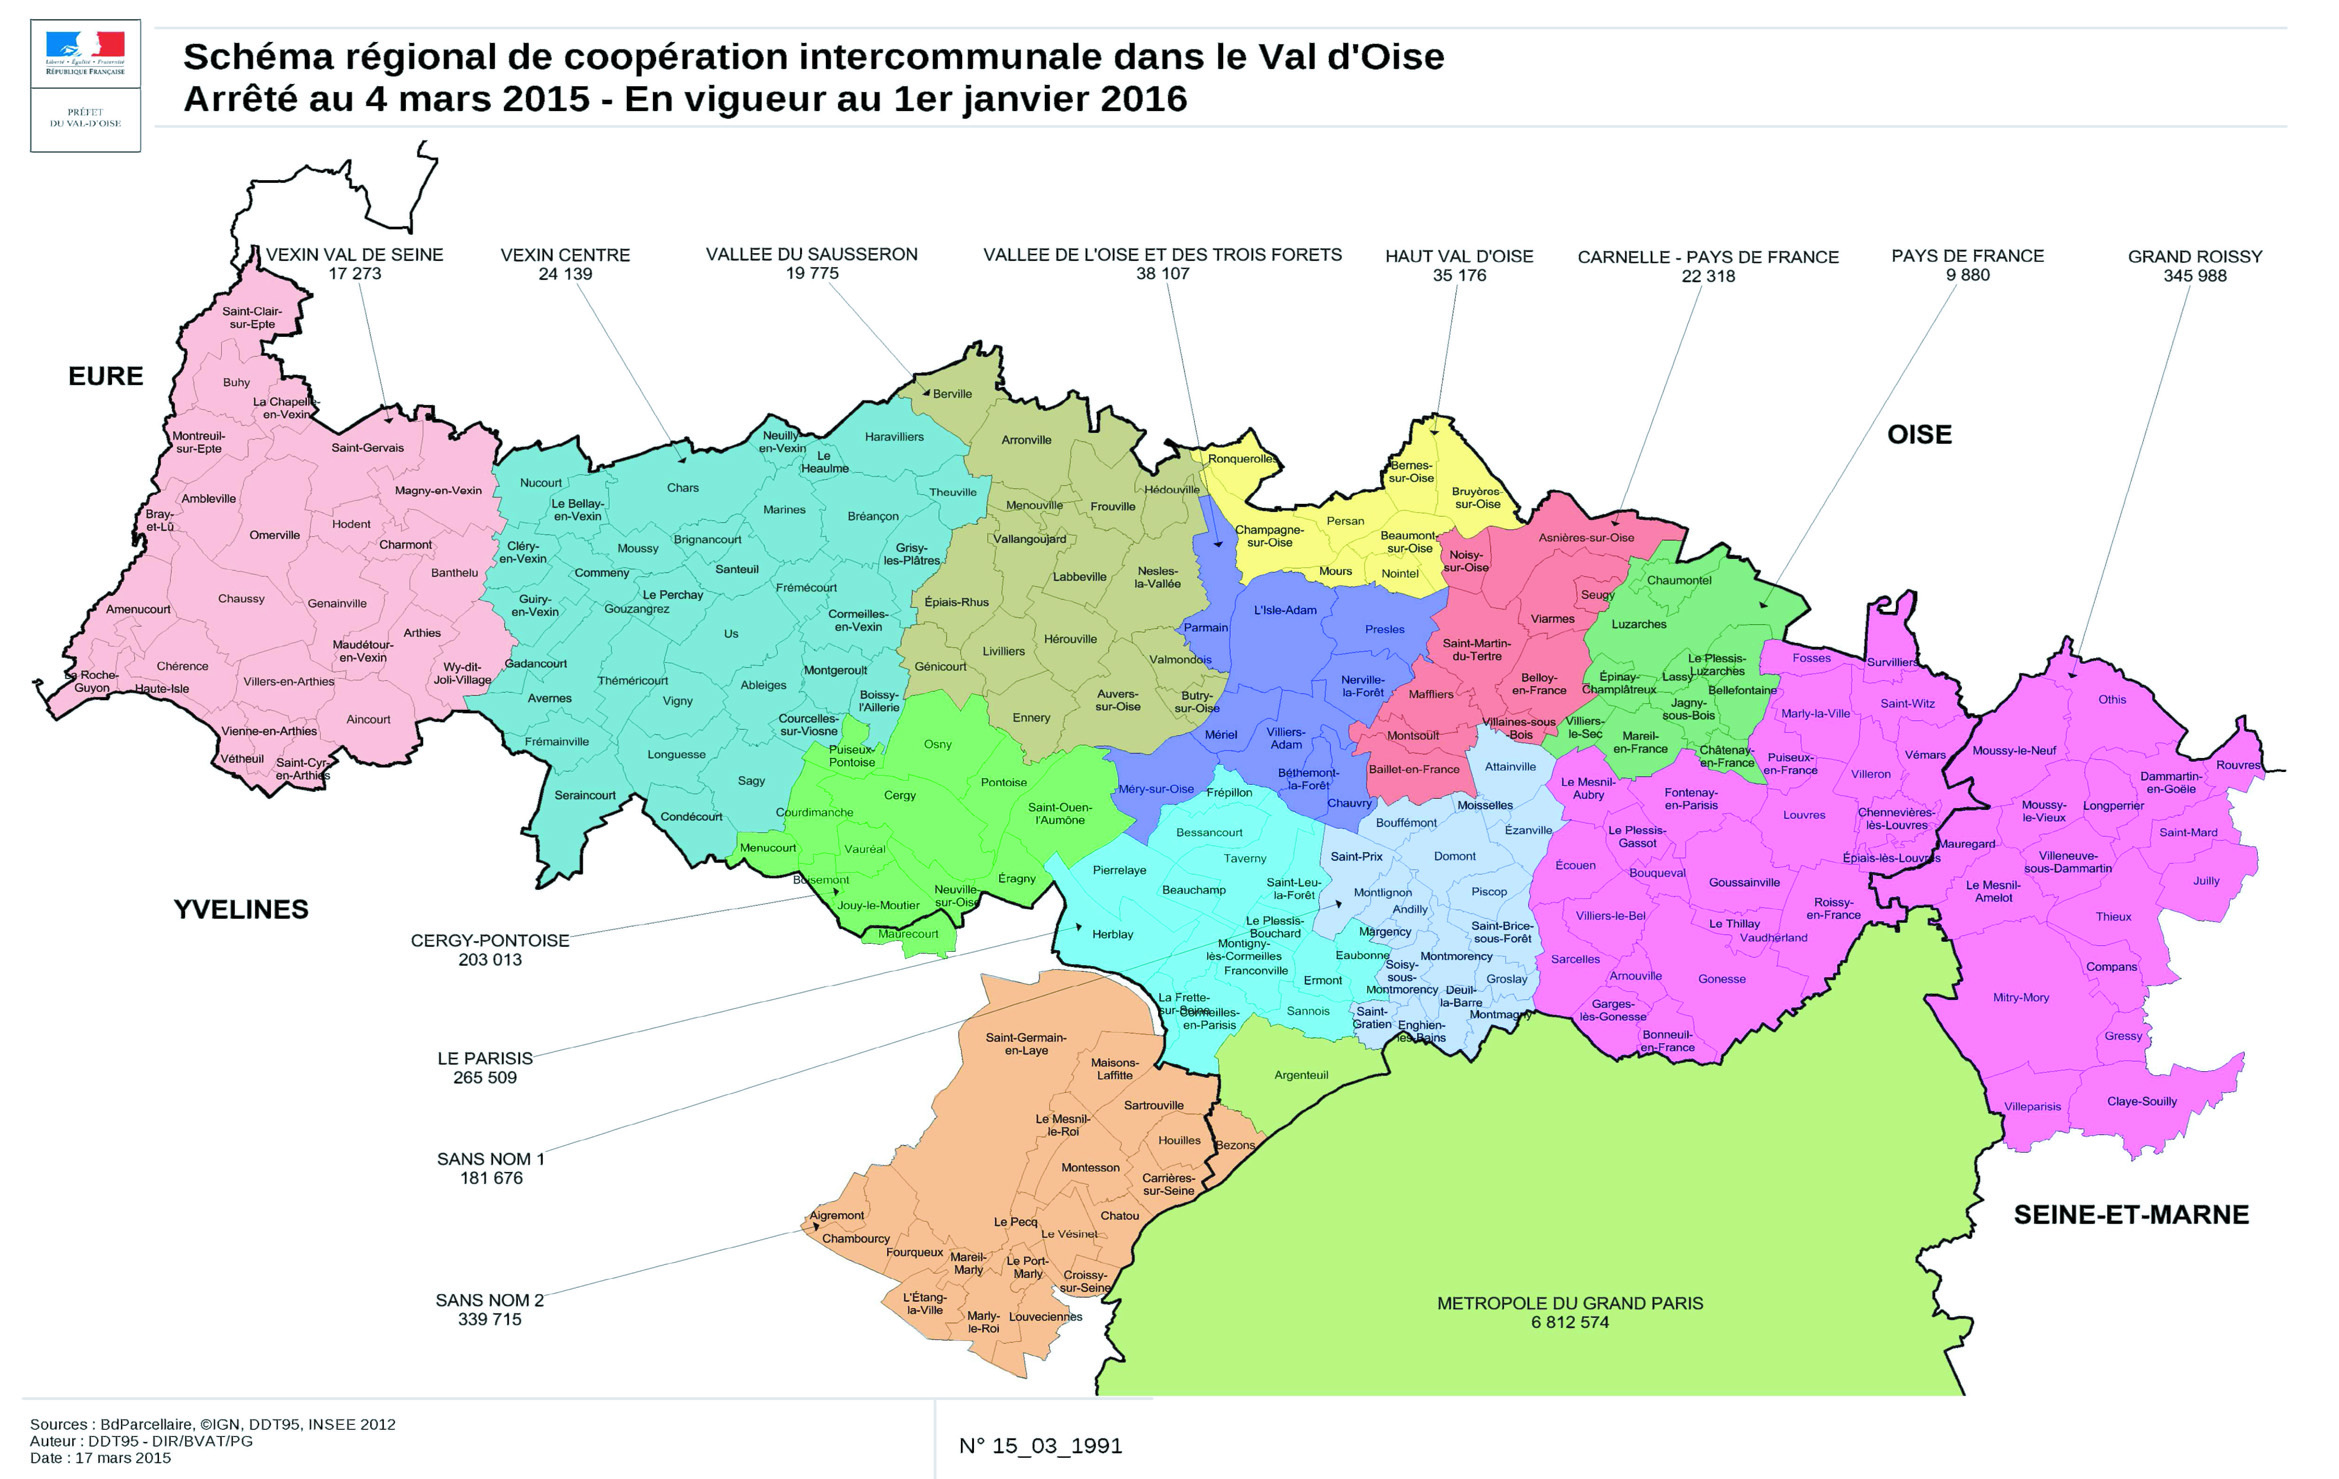 Conseil Municipal du 20 janvier 2016 " Sagy commune du Val d